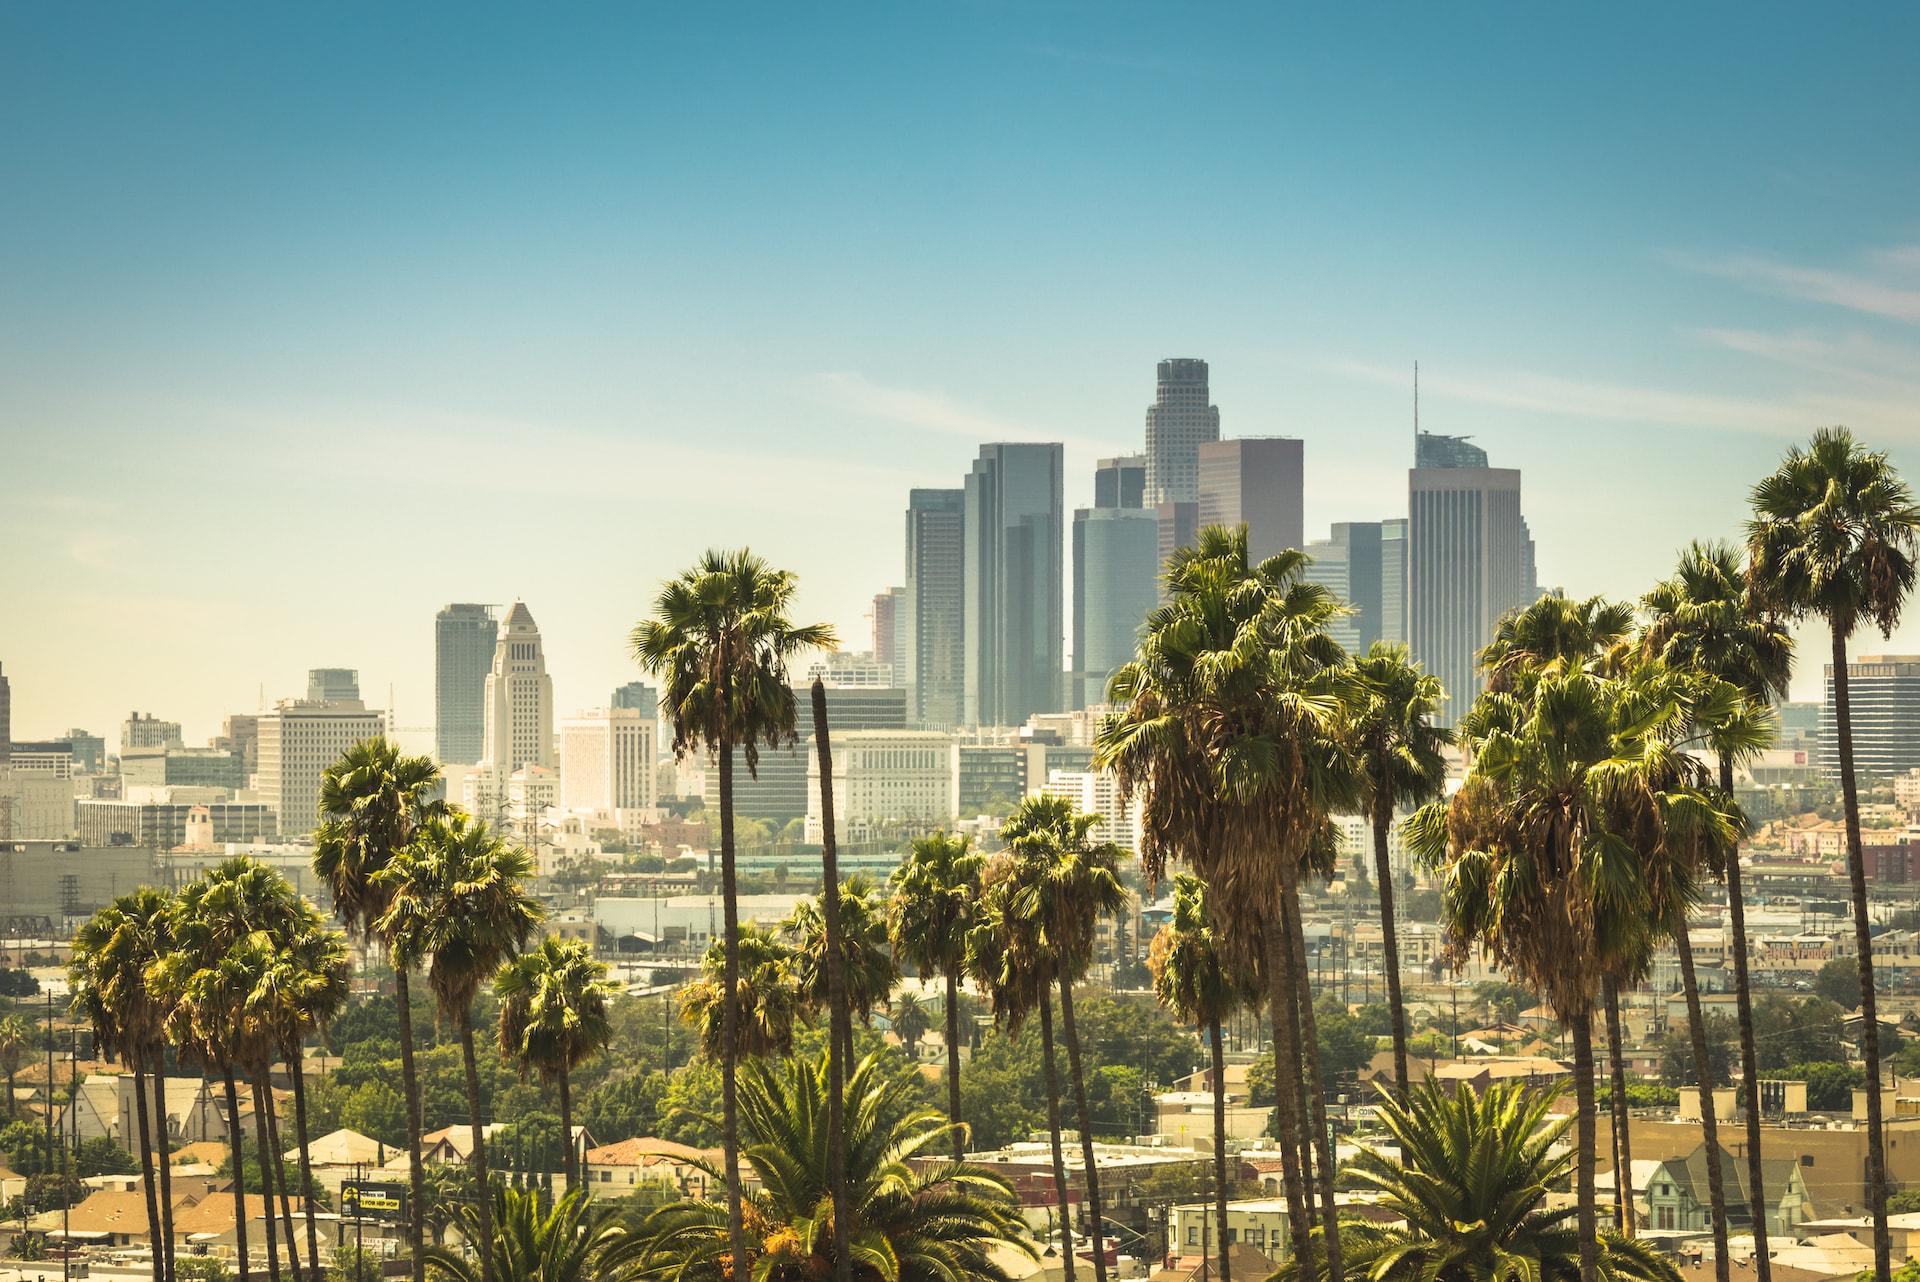 Los Angeles: Drug Problem in La La Land - featured